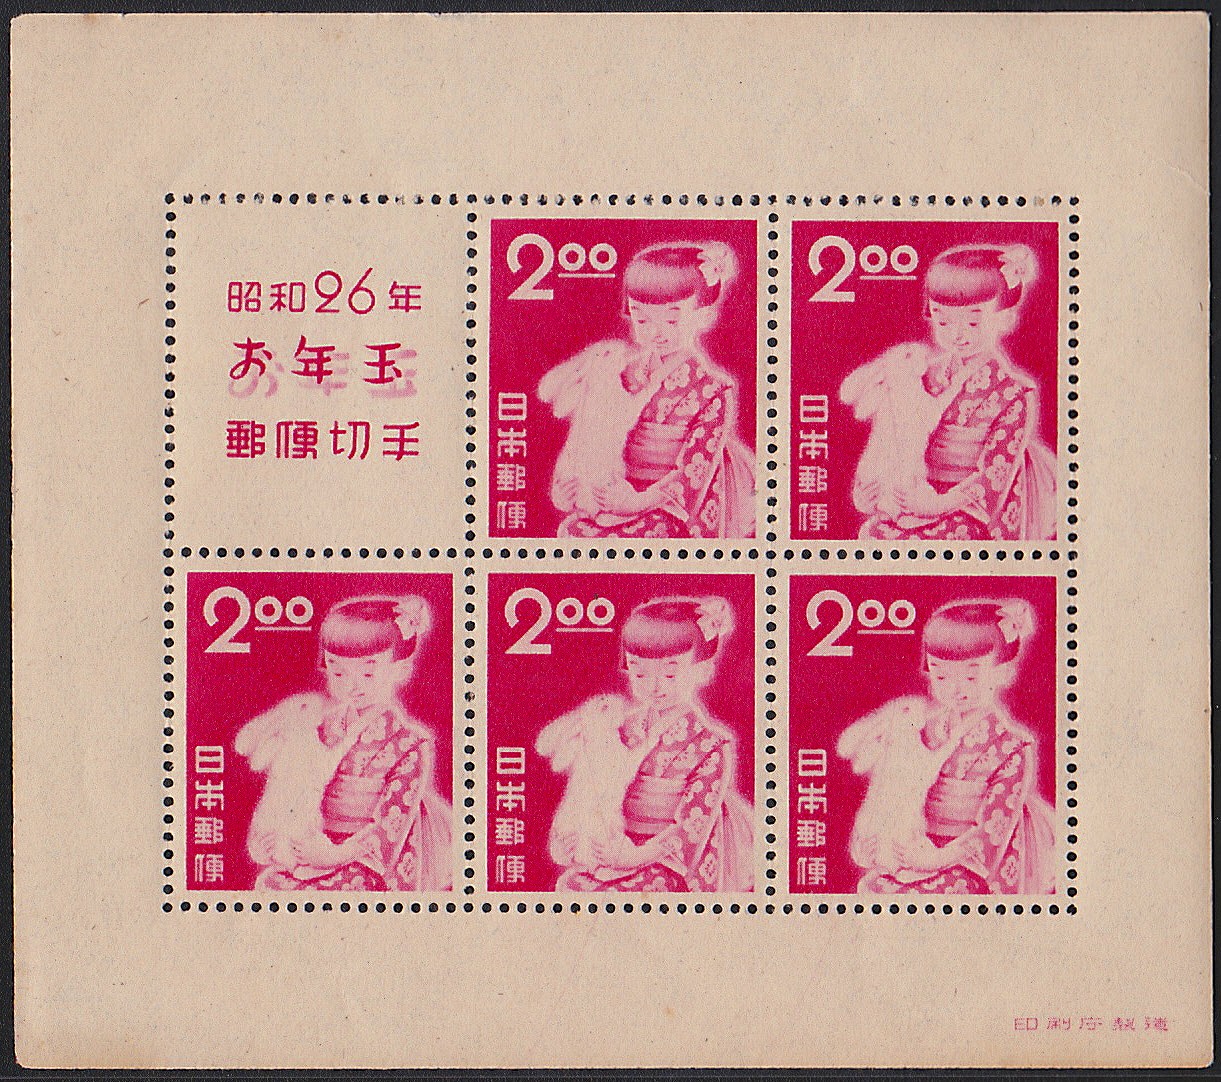 年賀　昭和26年御年玉郵便切手　印刷庁製造